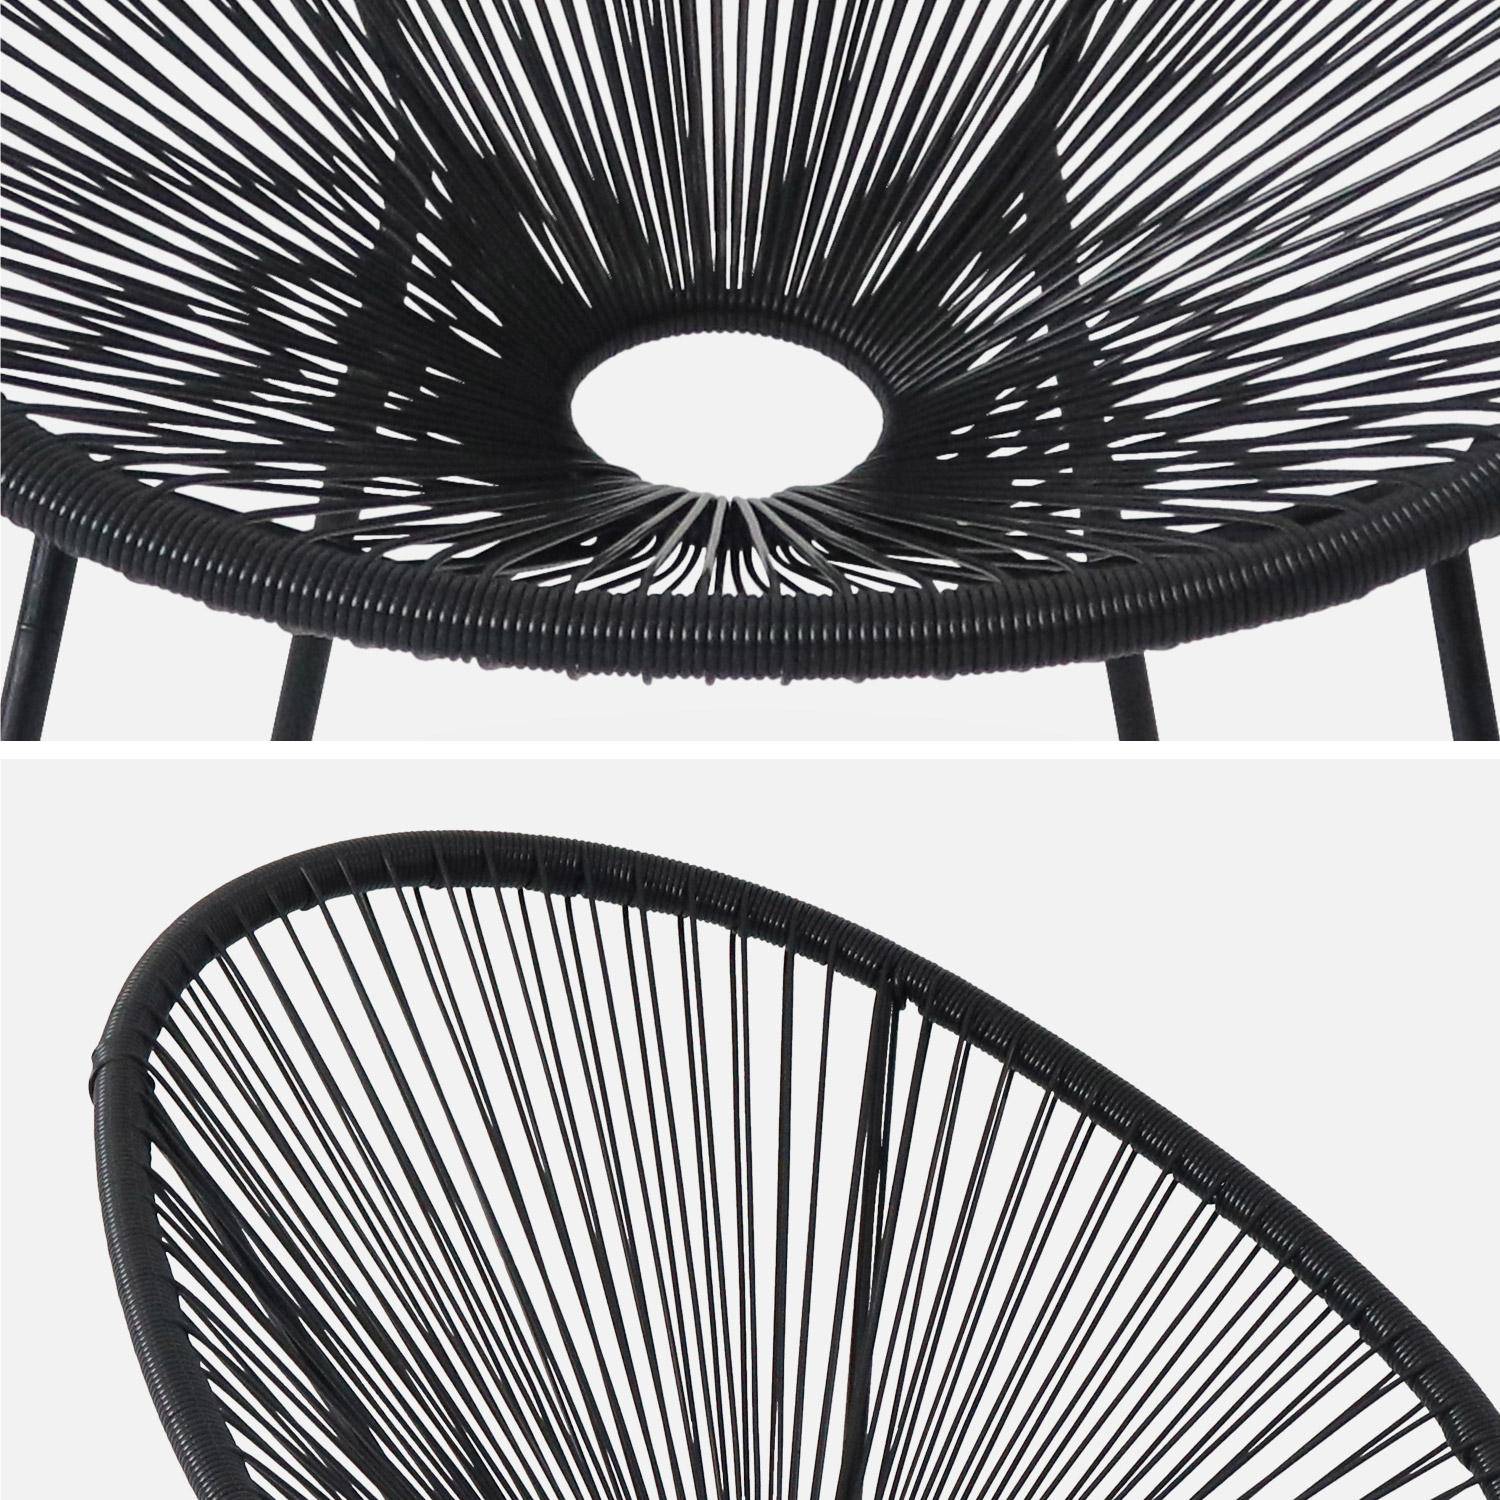 Lot de 2 fauteuils design Oeuf - Acapulco Noir- Fauteuils 4 pieds design rétro, cordage plastique, intérieur / extérieur Photo6